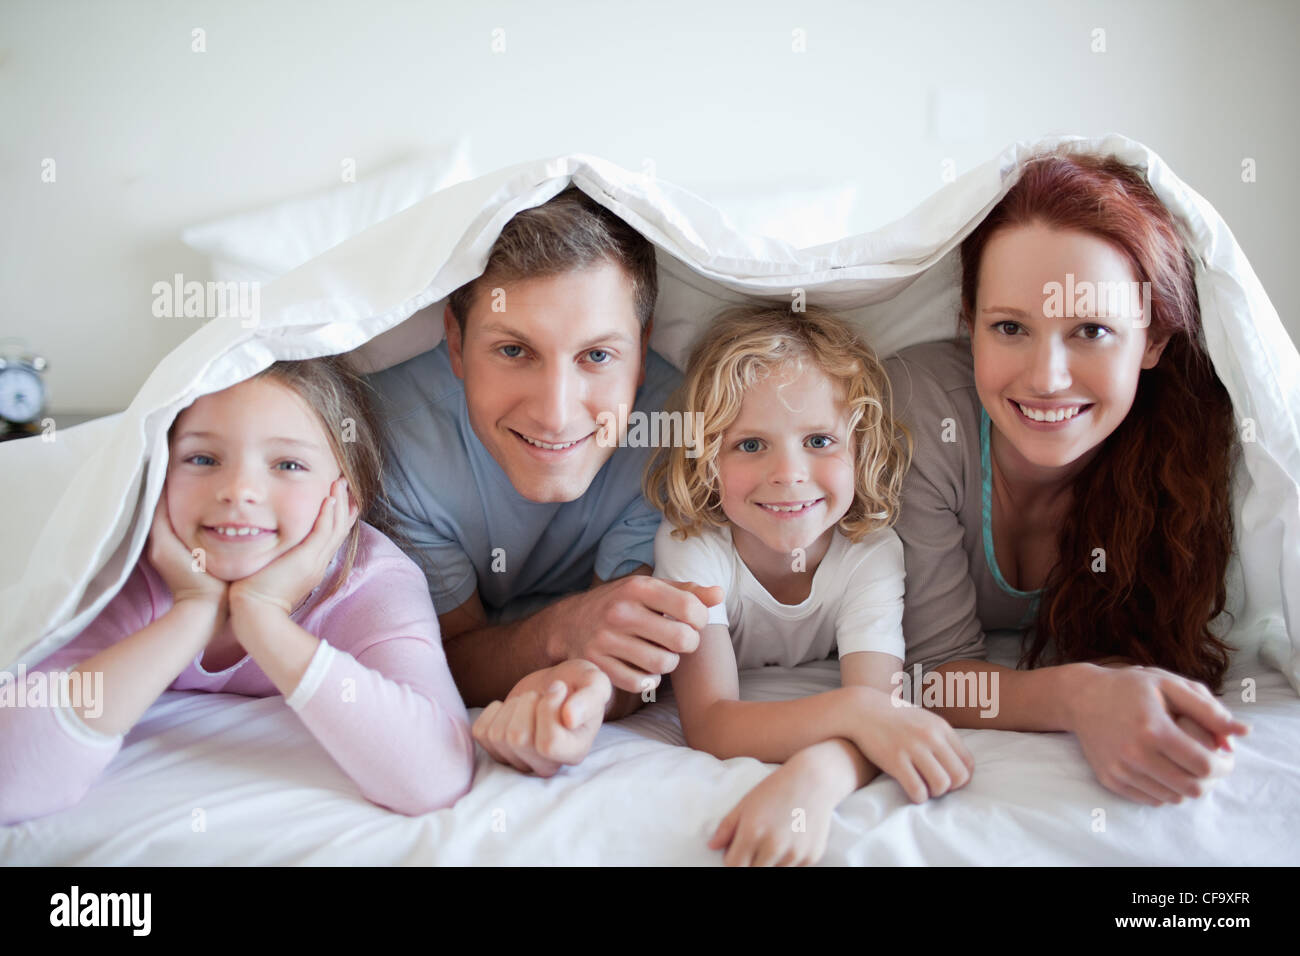 Брат мама одеяло. Семья на постельном белье. Семья на кровати. Семья под одеялом. Счастливая семья в кровати.